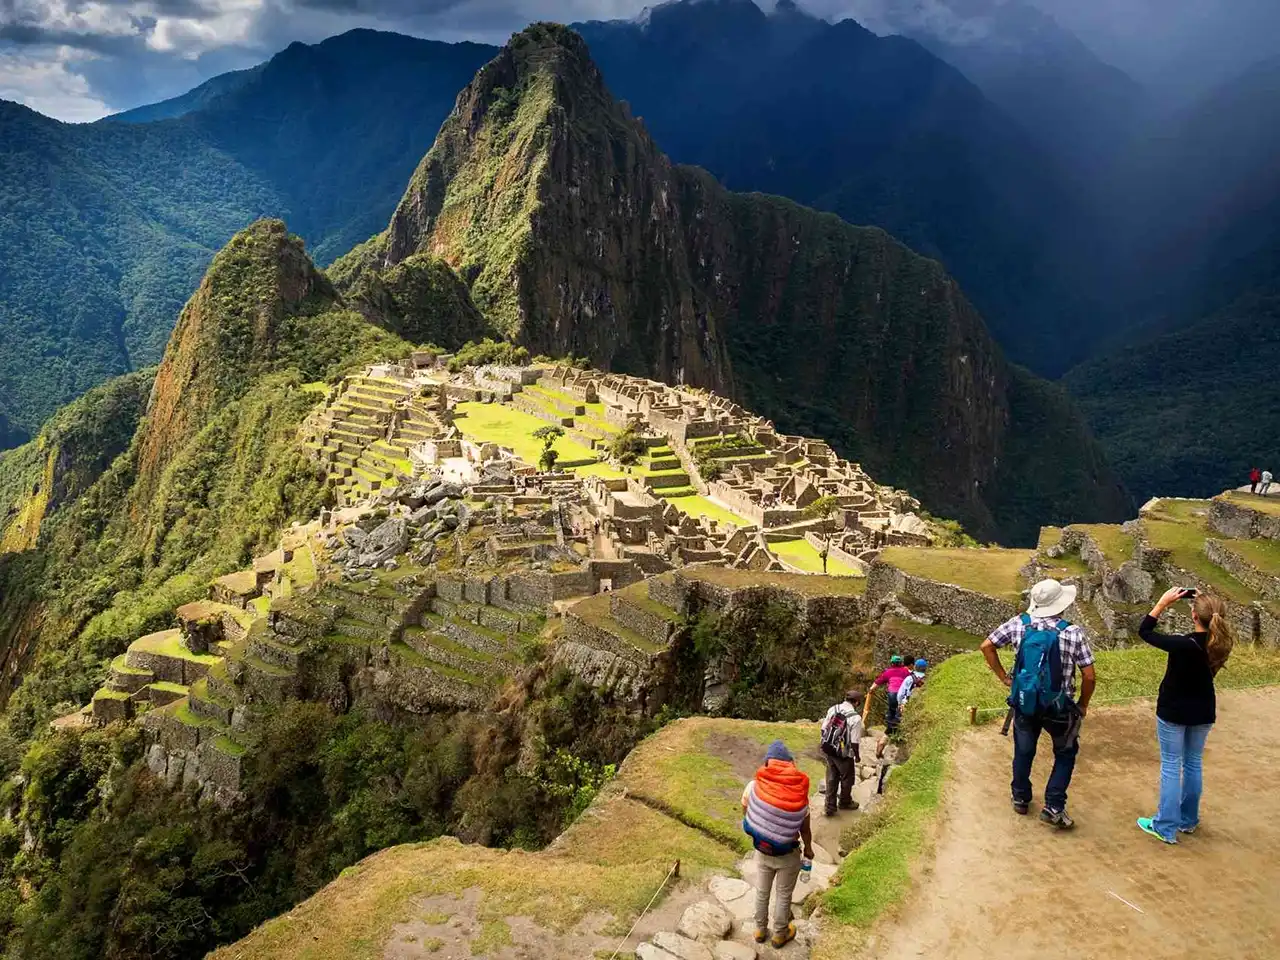 Tour du lịch Peru tại AB Travel